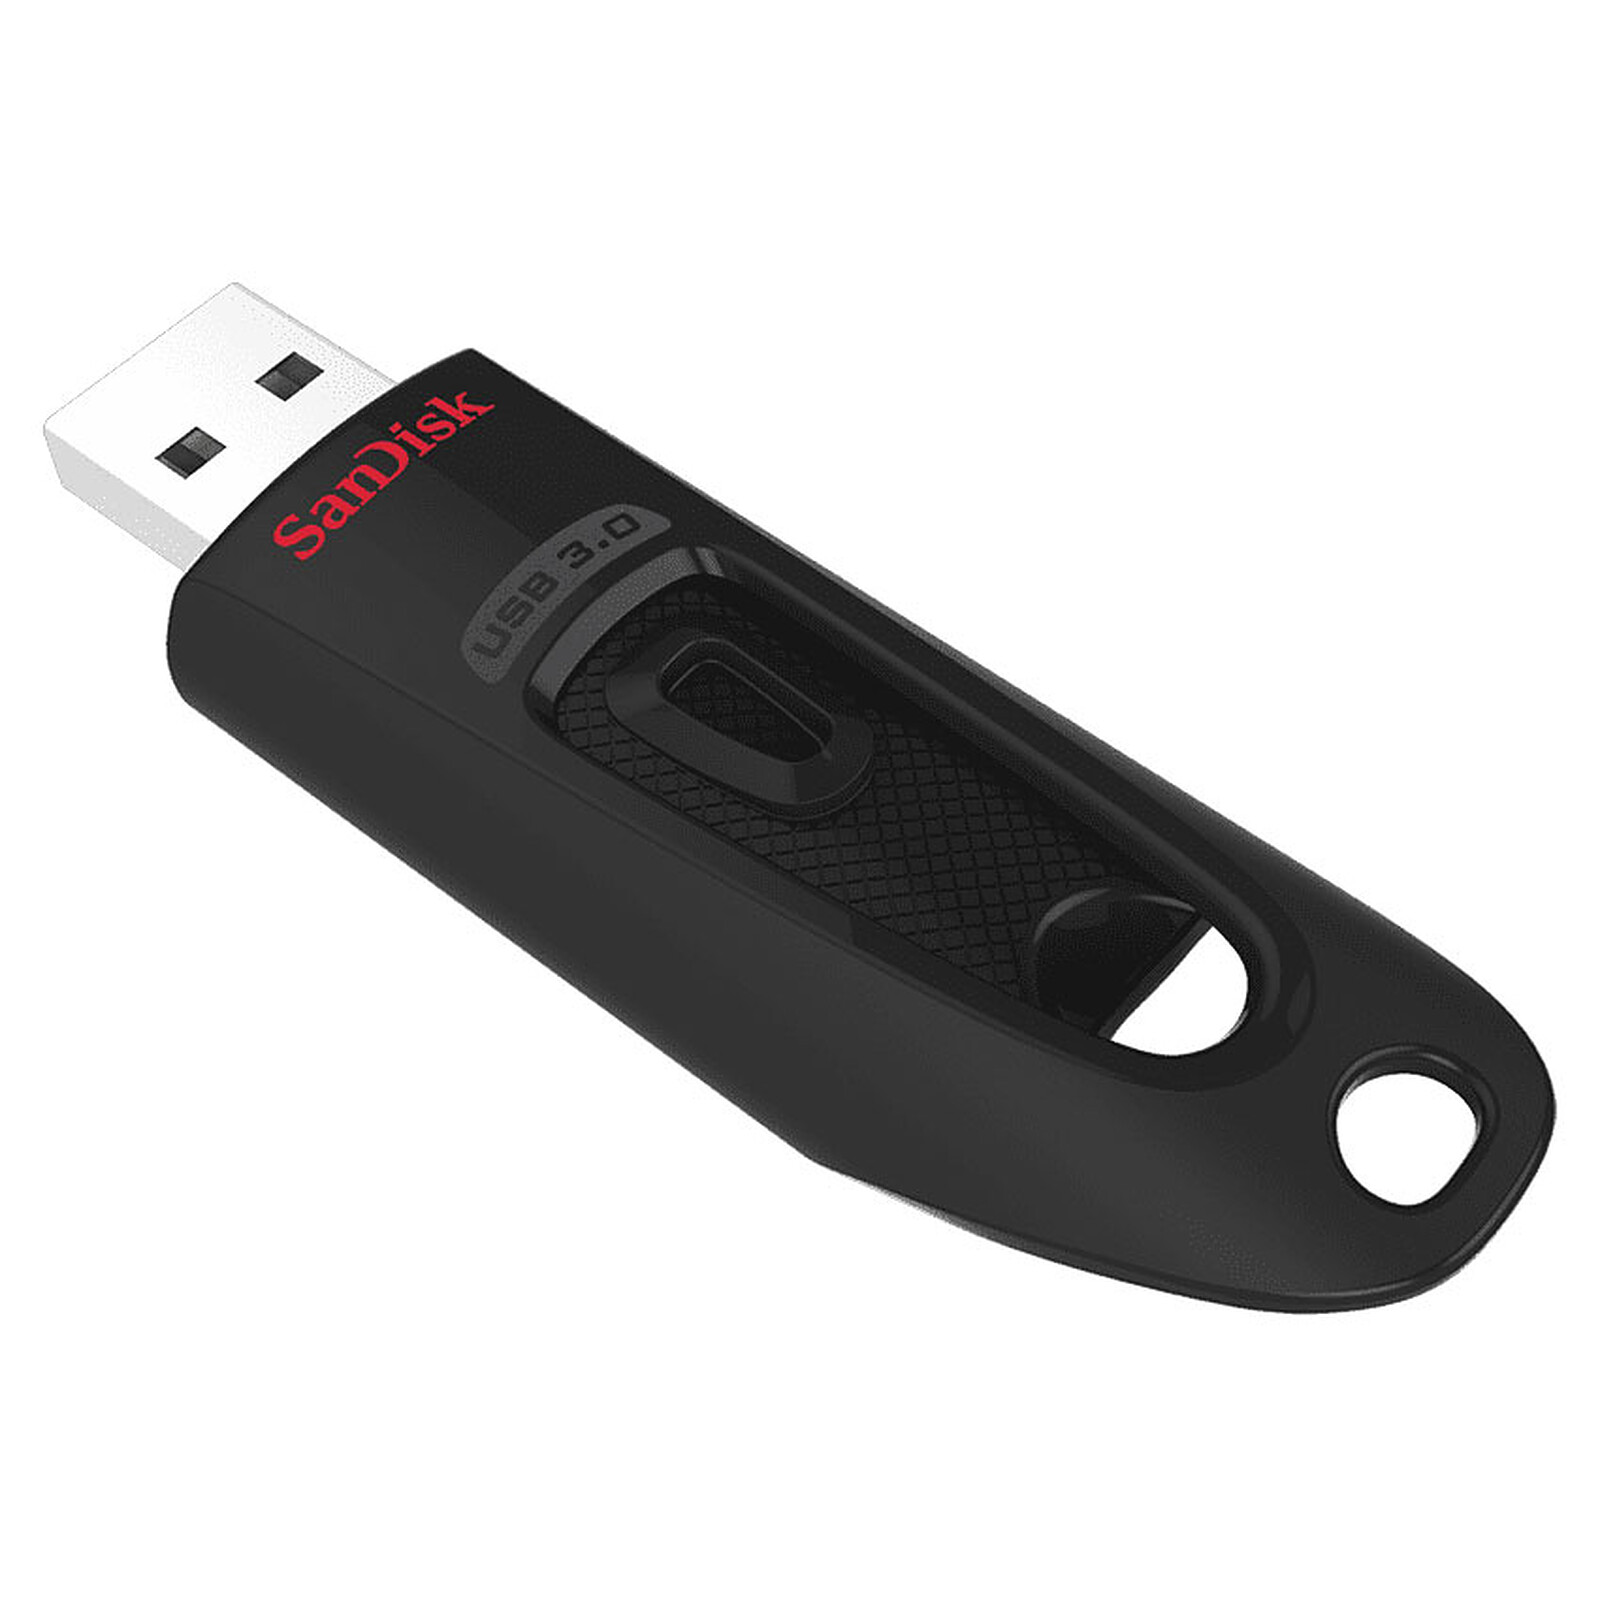 SanDisk Ultra Eco 512 Go - Clé USB - LDLC